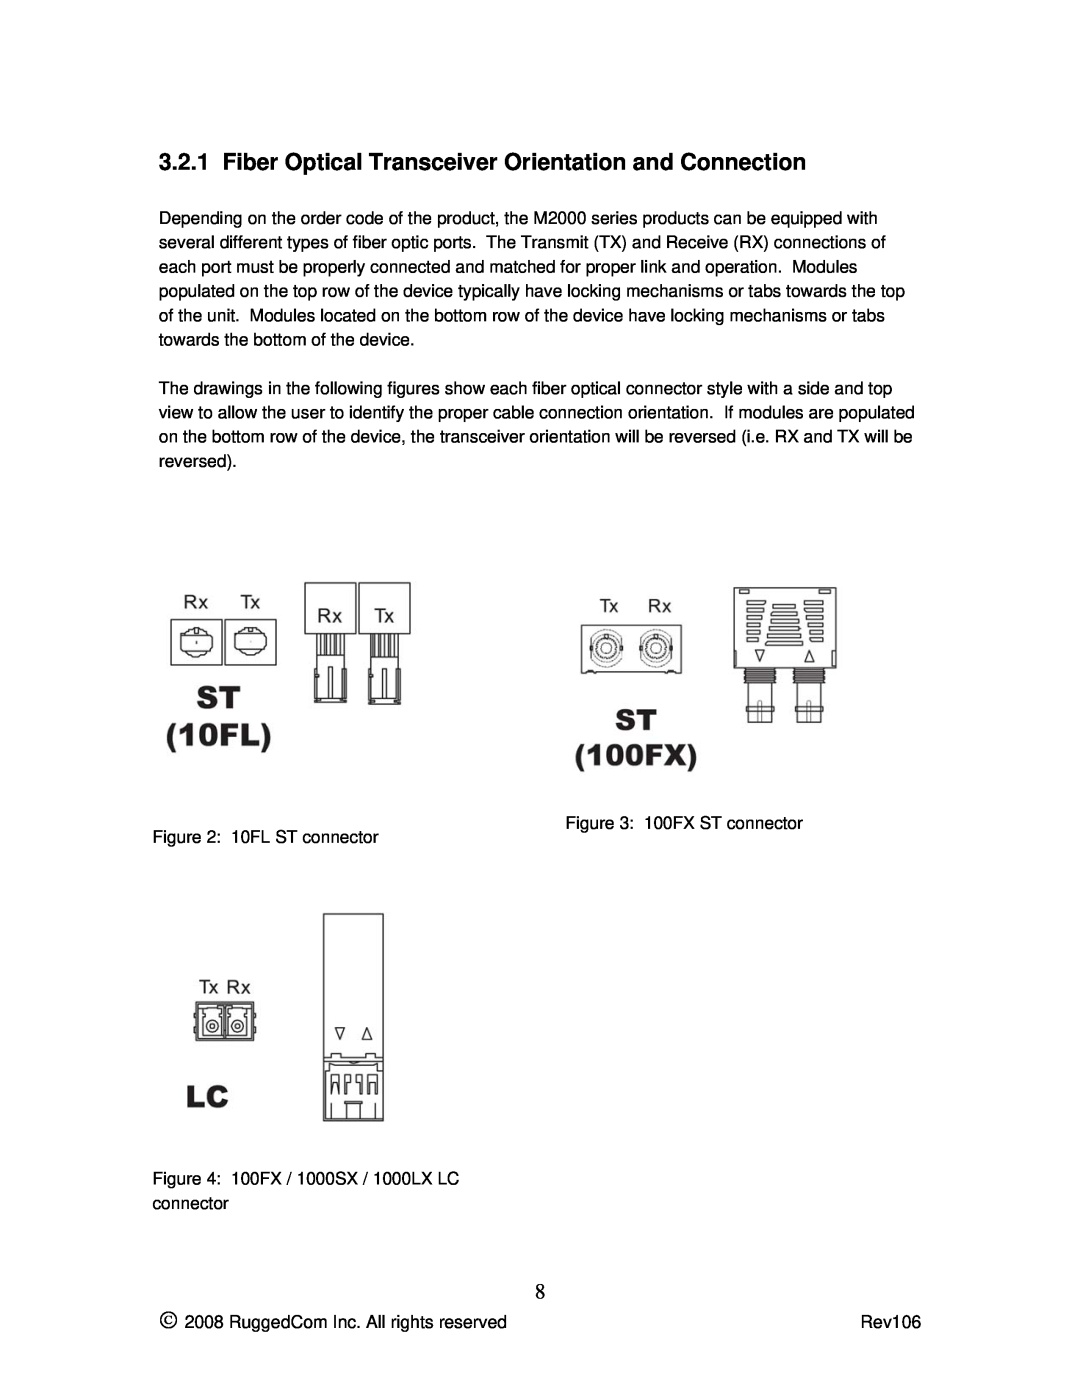 RuggedCom M2100 manual Fiber Optical Transceiver Orientation and Connection 